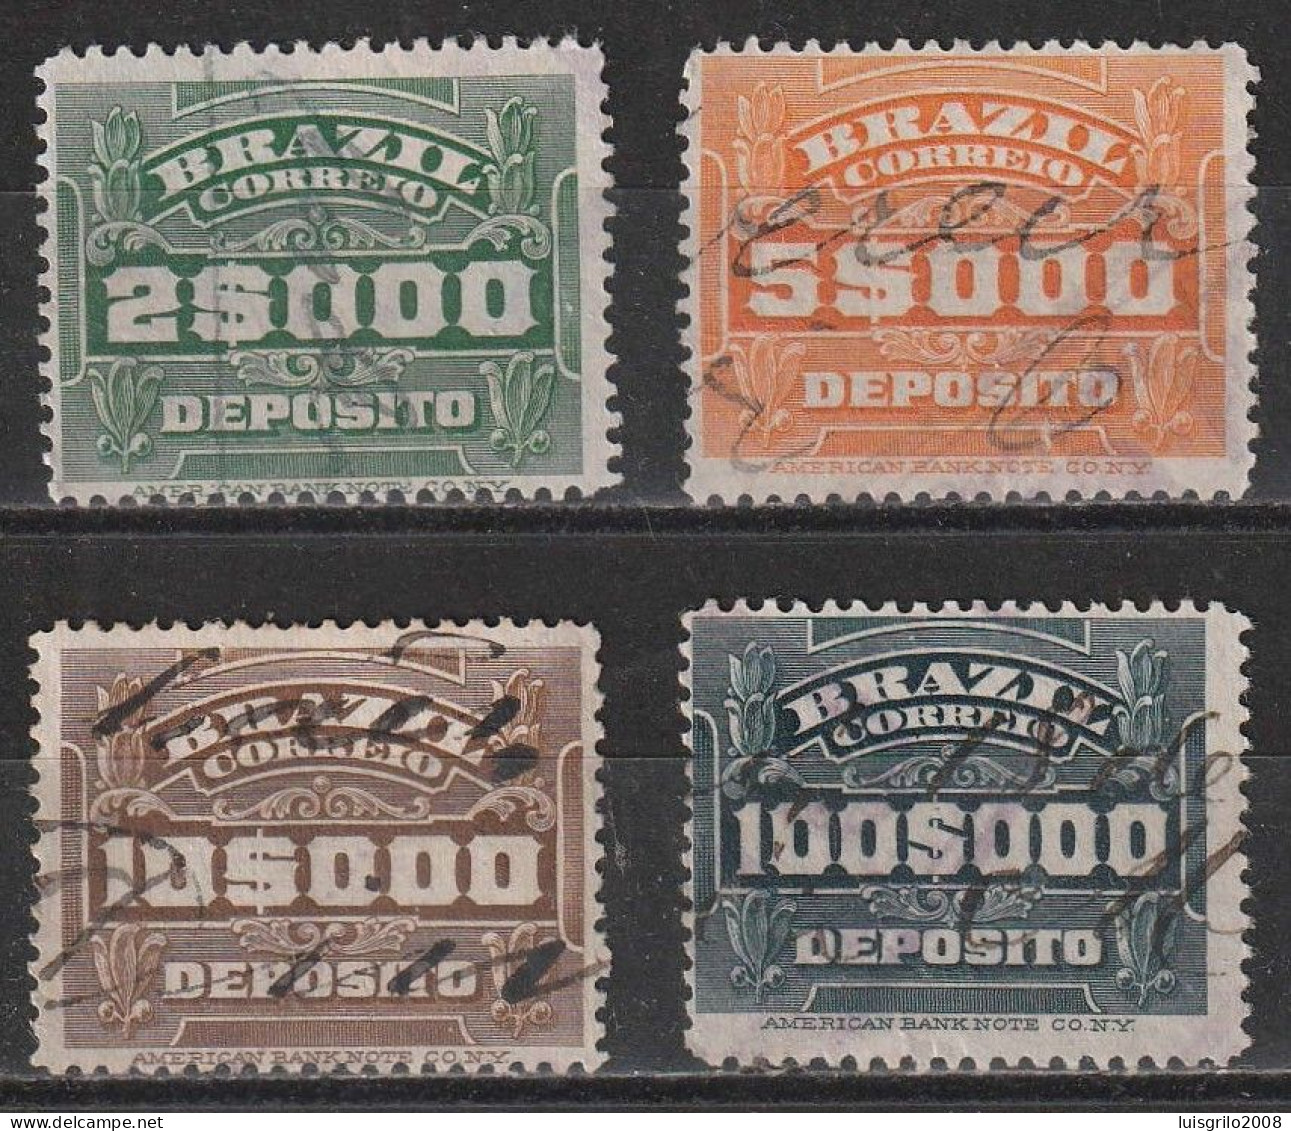 Revenue/ Fiscaux, Brazil 1920 - Depósito, Receita Fiscal -|- 2$000, 5$000, 10$000, 100$000 - Officials